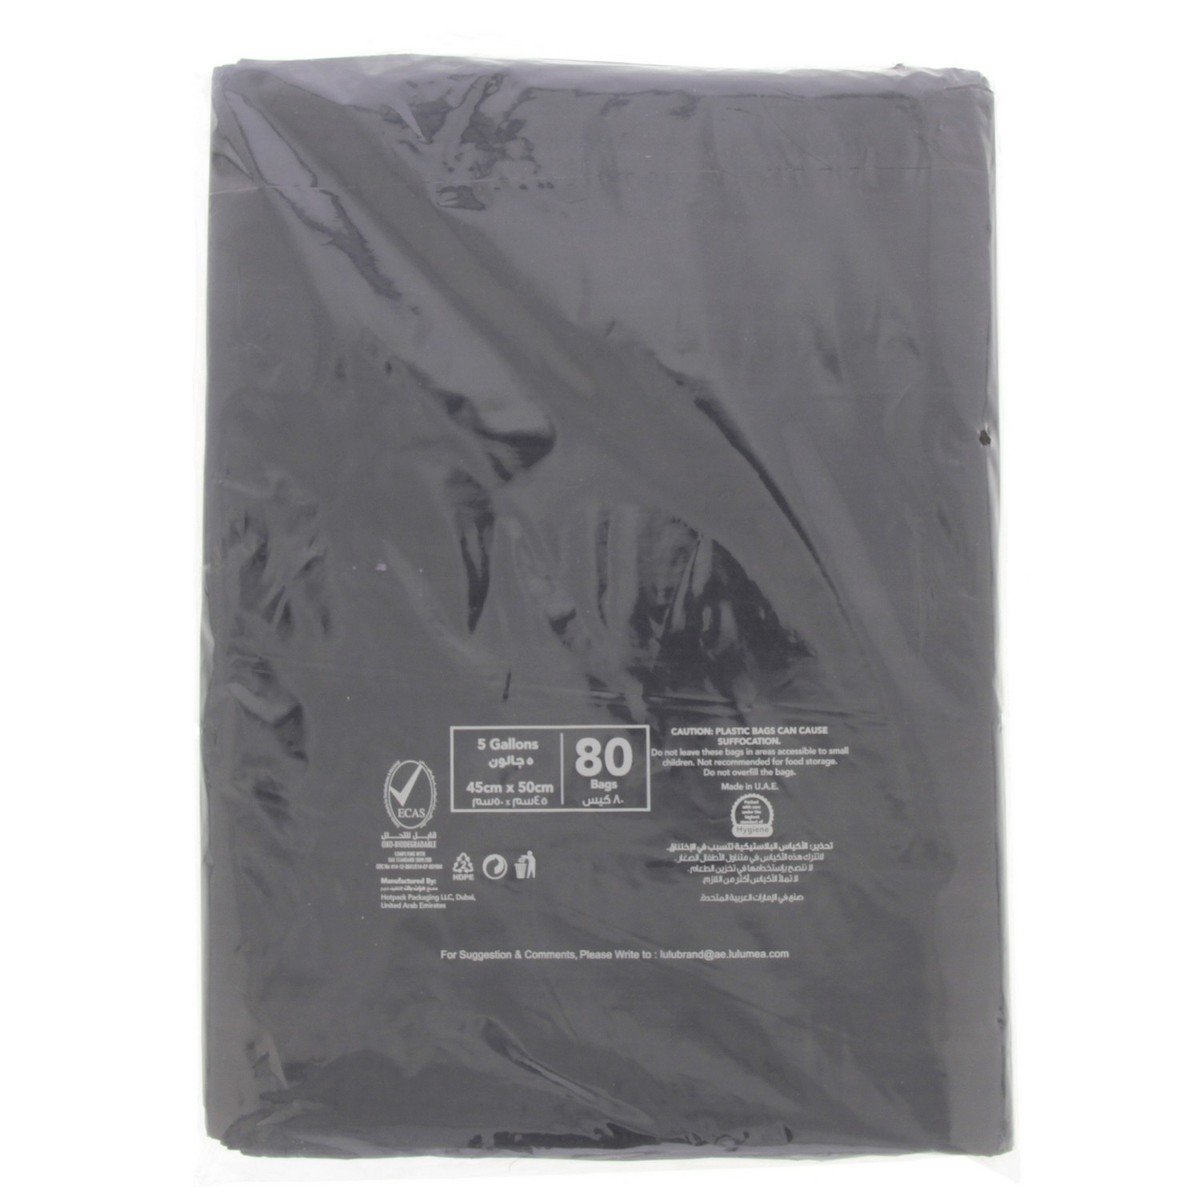 LuLu Garbage Bags 5 Gallon Size 45 x 50cm 80pcs